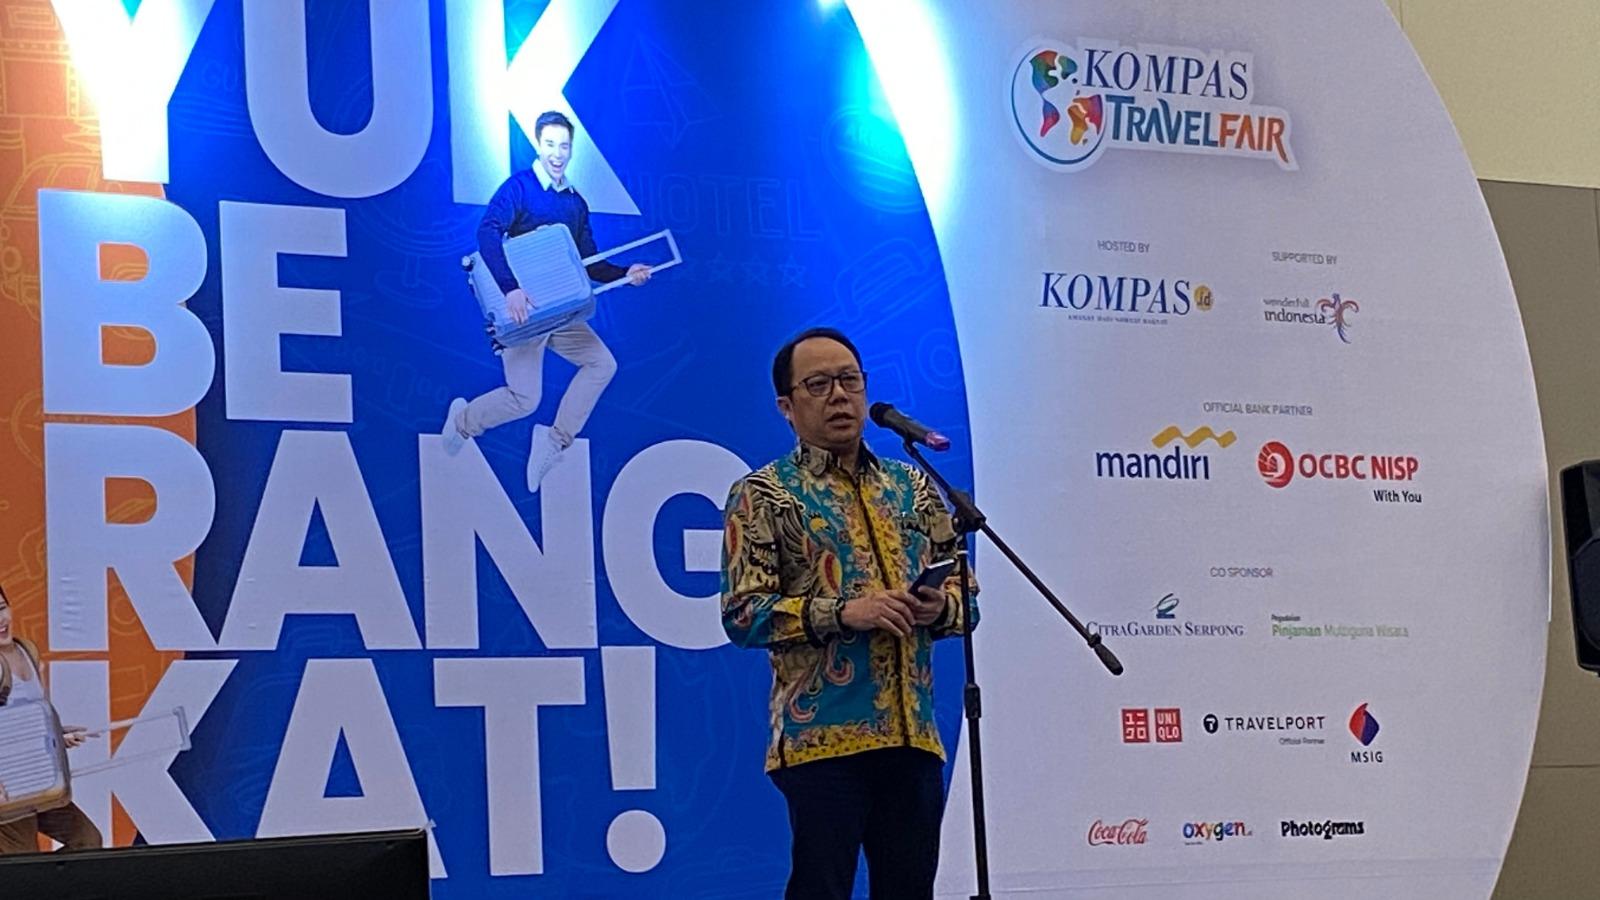 Ramaikan Kompas Travel Fair, Santika Indonesia Hotels & Resorts Tawarkan Harga Menginap Terbaik